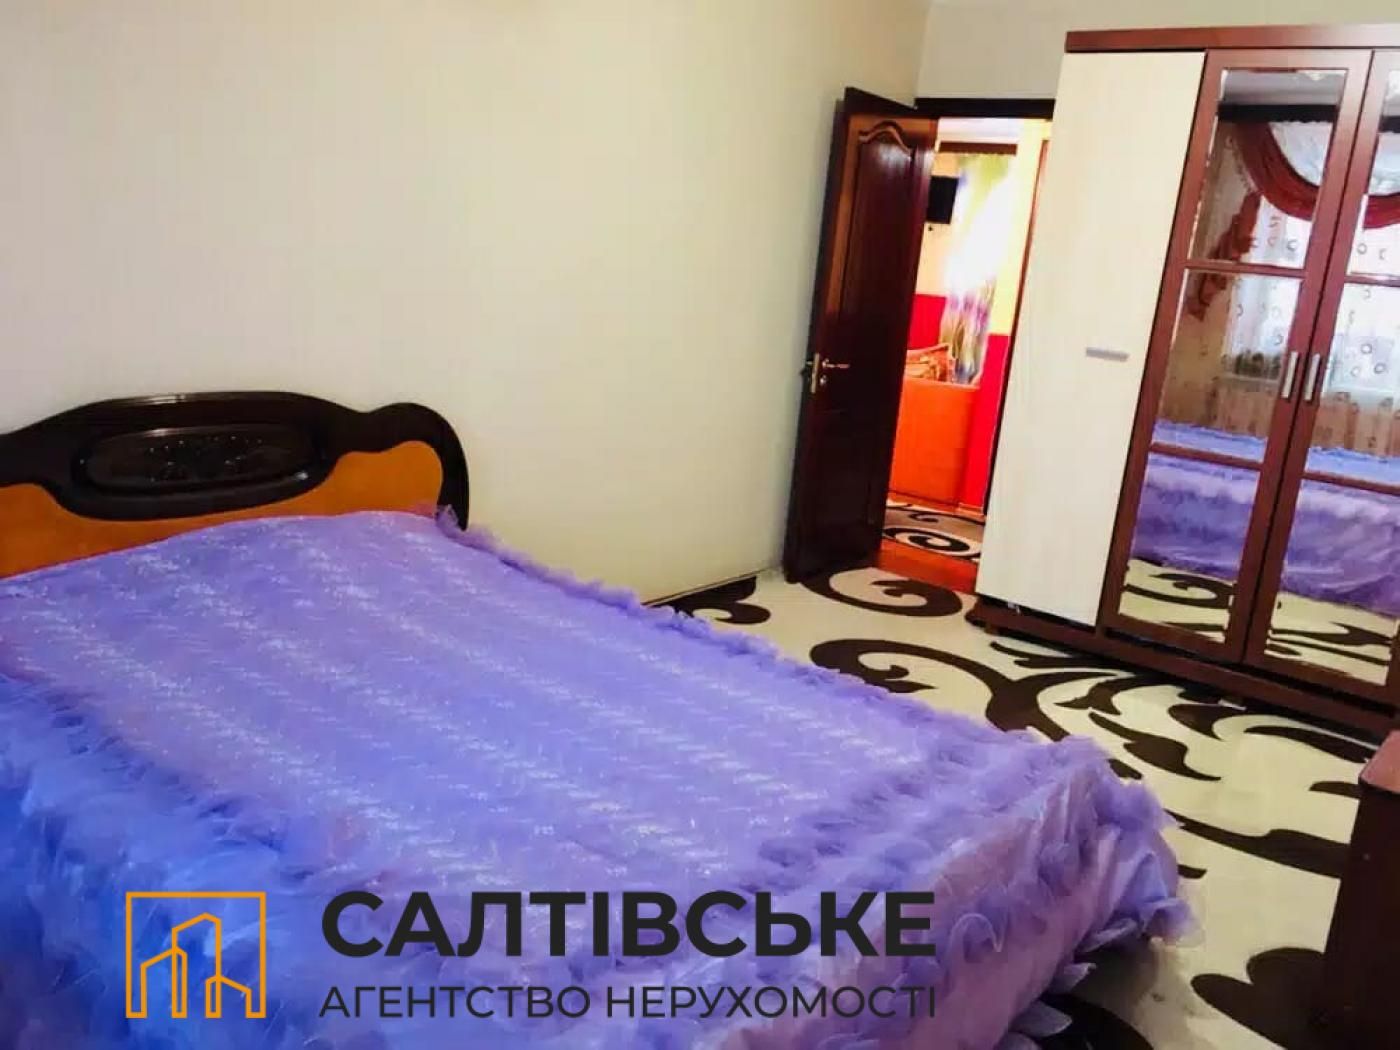 6041-ЕМ Продам 3к квартиру на Салтовке ТРК Украина 603 м/р